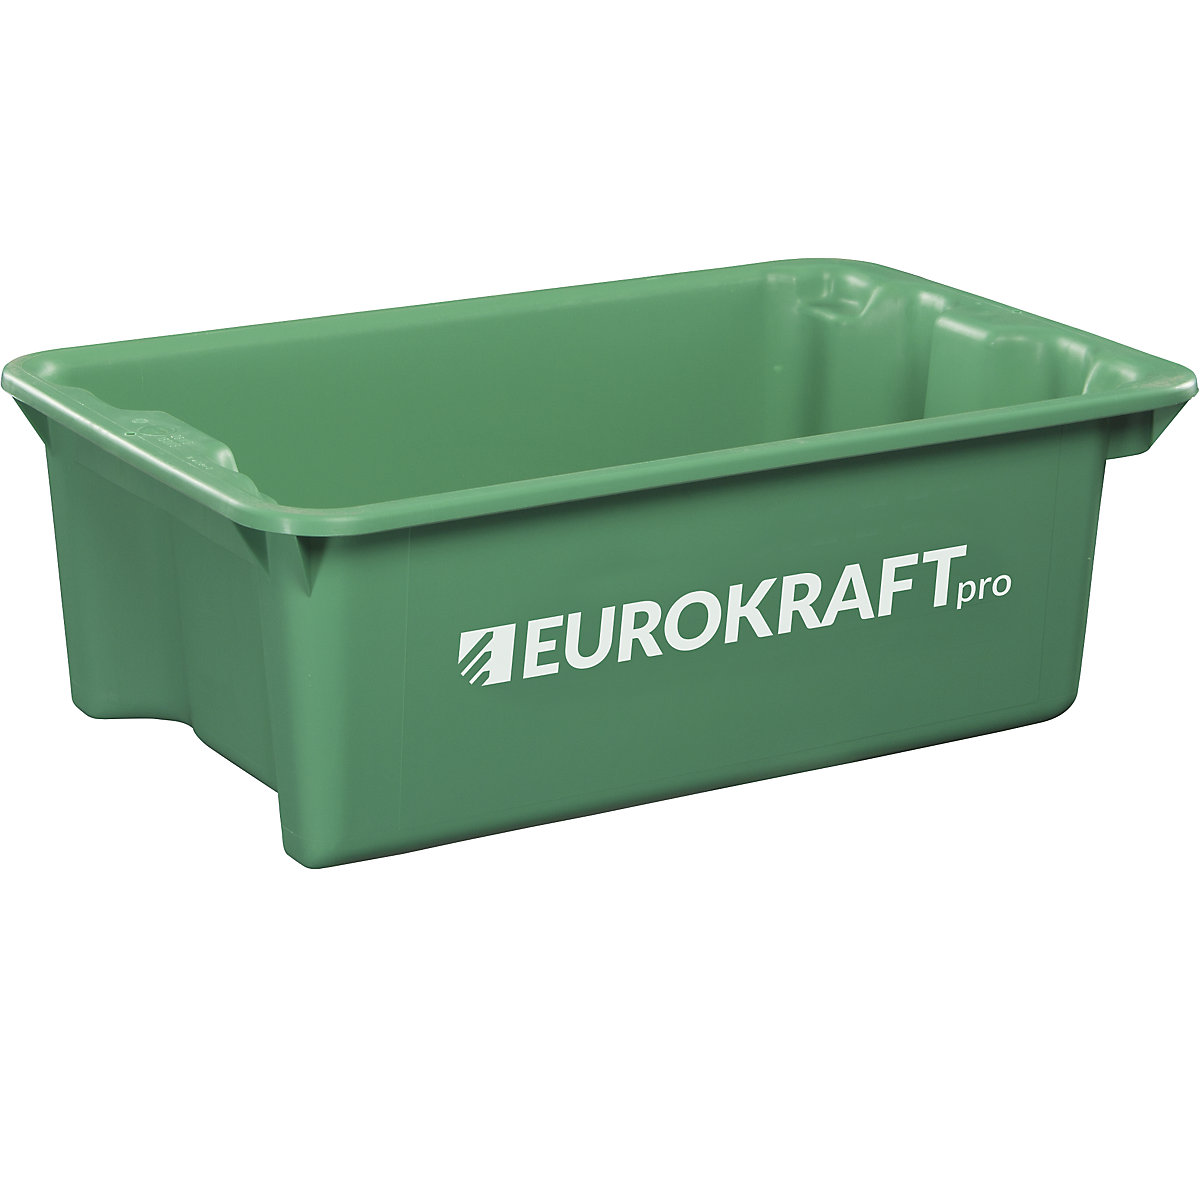 EUROKRAFTpro – Obrotowy pojemnik do ustawiania w stos z polipropylenu dopuszczonego do kontaktu z żywnością, poj. 34 l, opak. 3 szt., ścianki i dno zamknięte, zielone